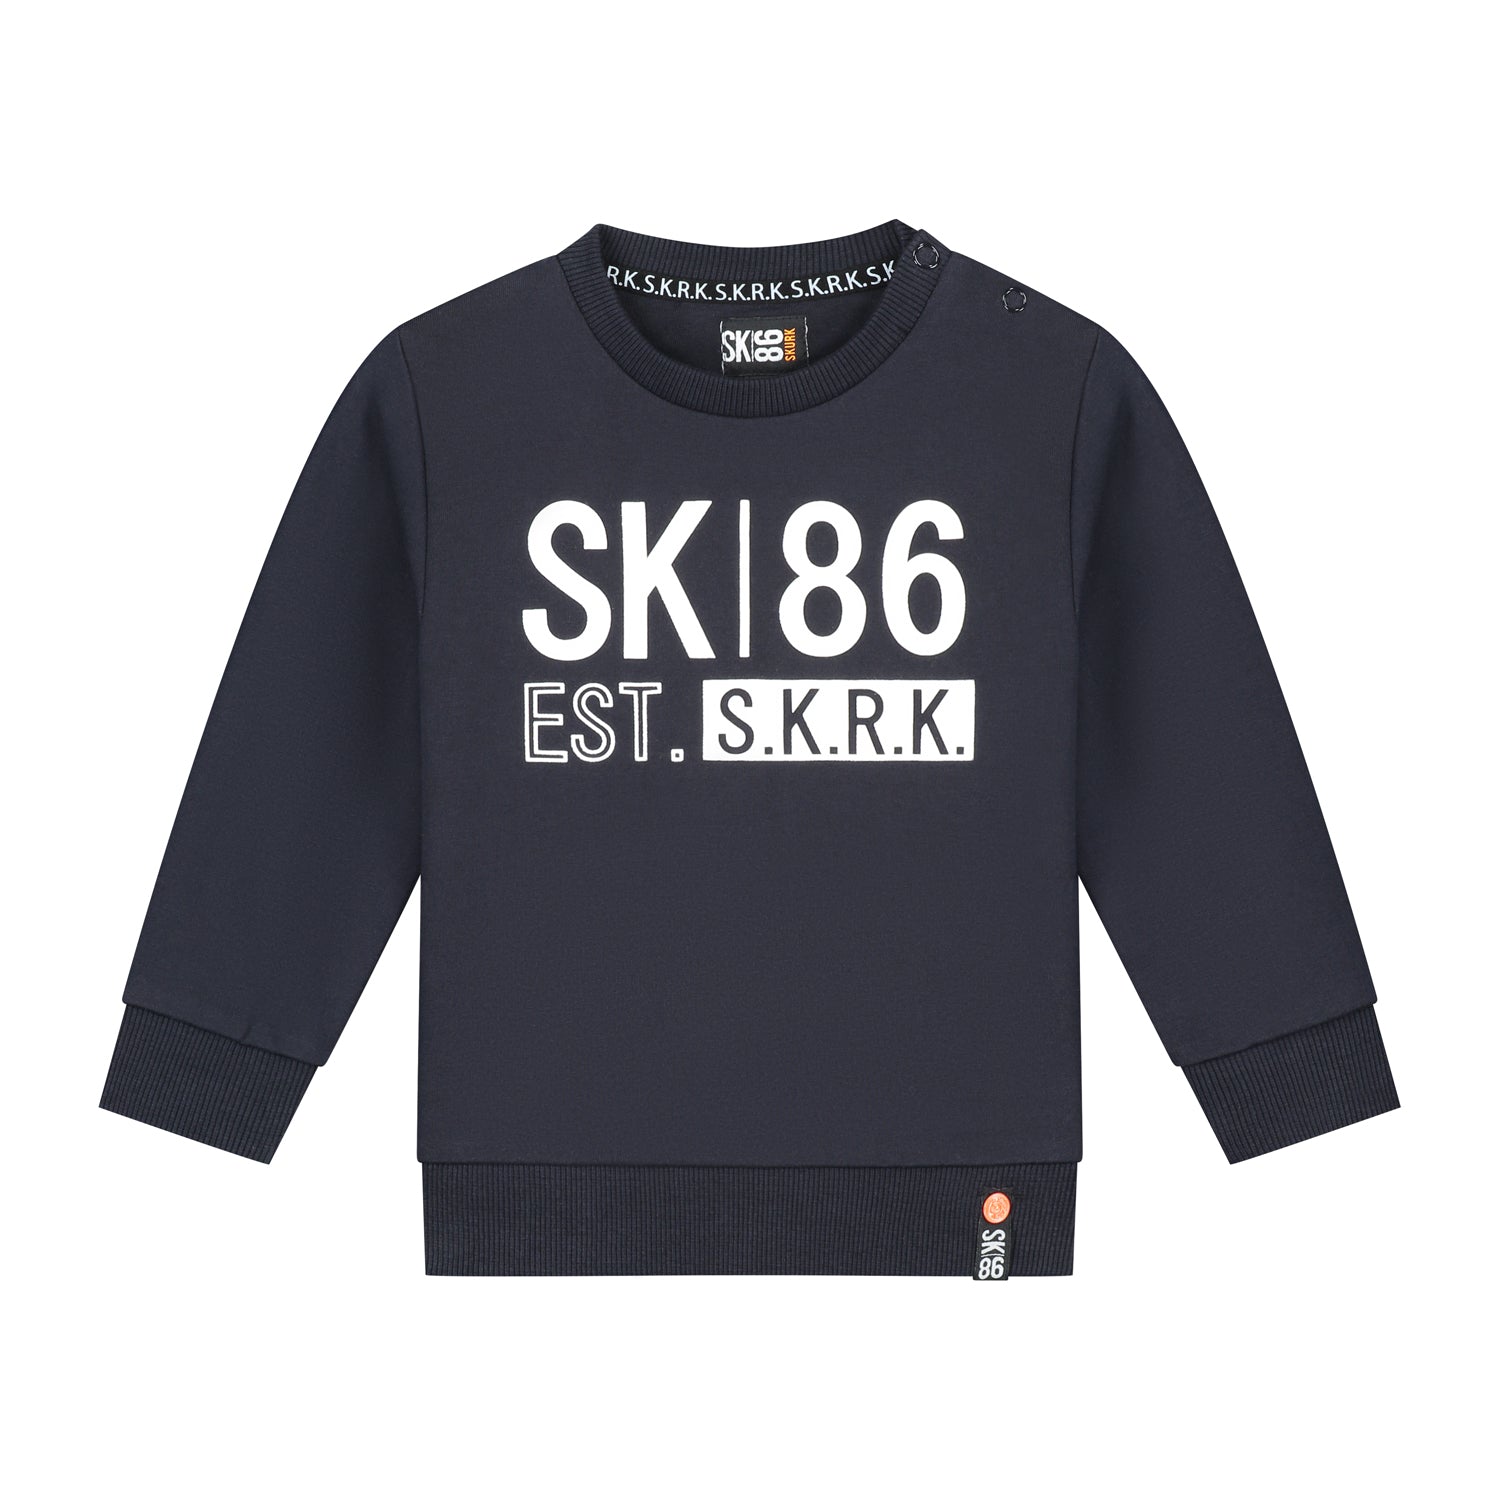 Jongens Sweater Stuur Navy van Skurk in de kleur Navy in maat 158-164.